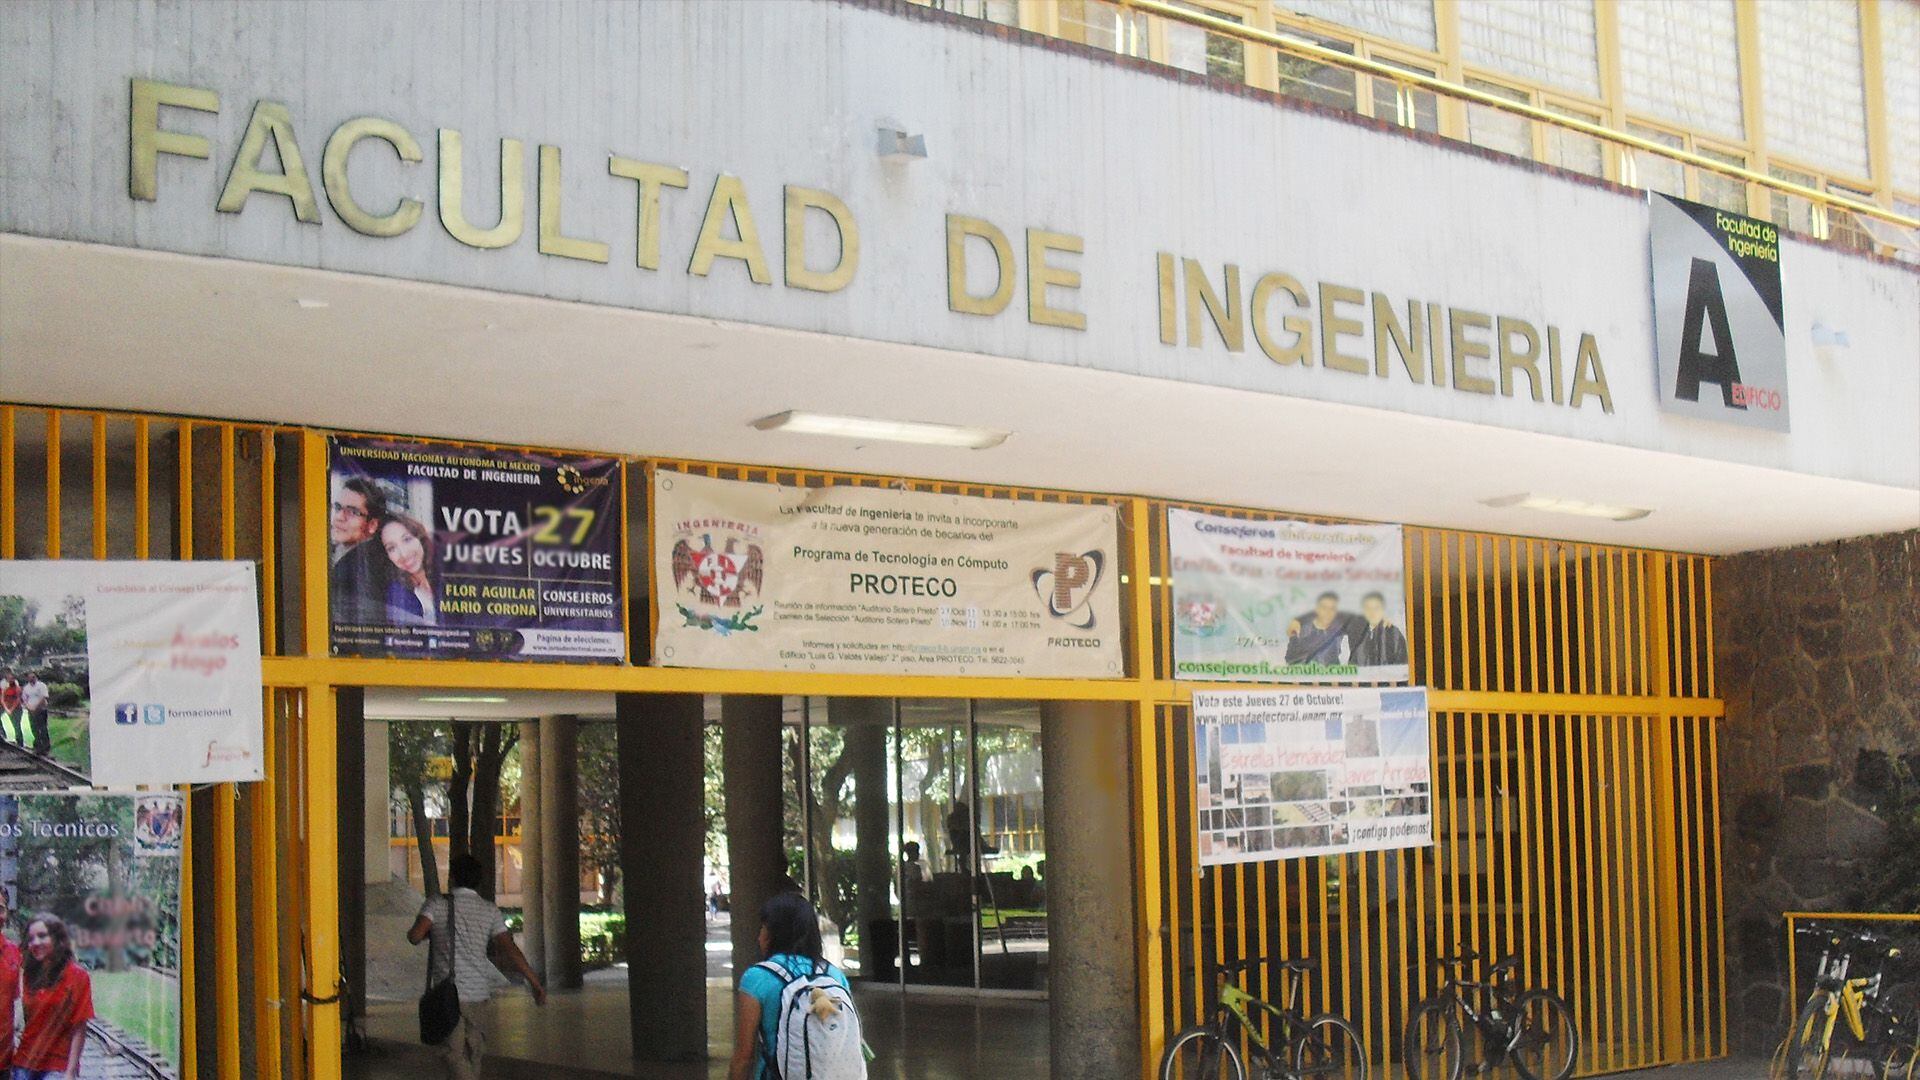 Realizan pruebas sanitarias a los alimentos de la cafetería Cibarium de la Facultad de Ingeniería de la UNAM